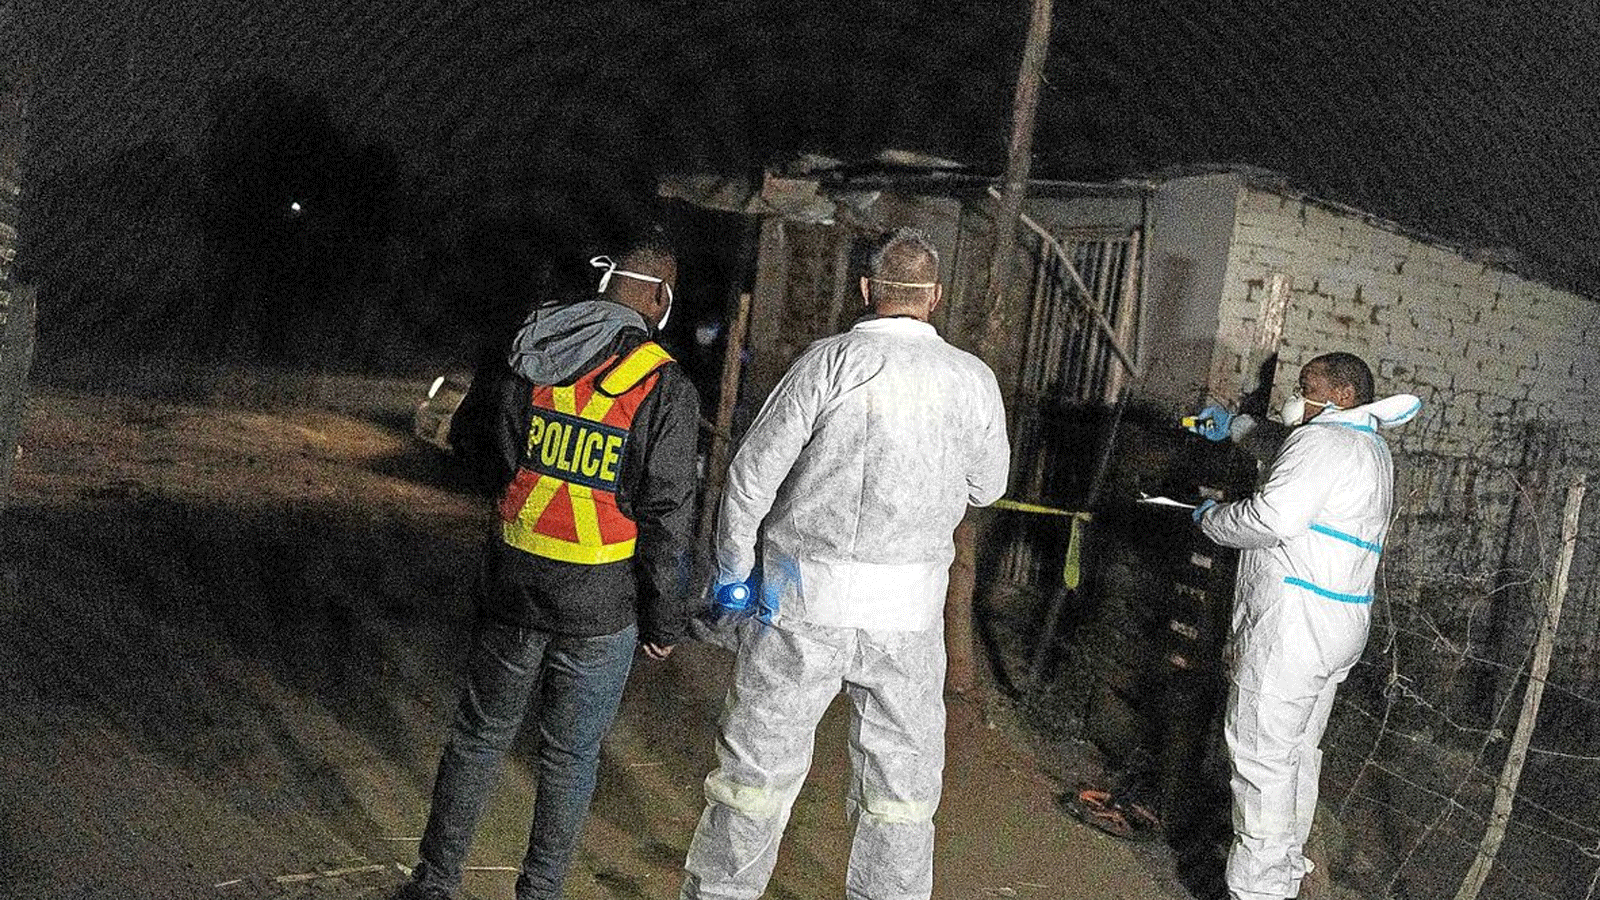 أعضاء فريق علوم الطب الشرعي بجنوب أفريقيا في مكان الحادث بعد تسرّب الغاز